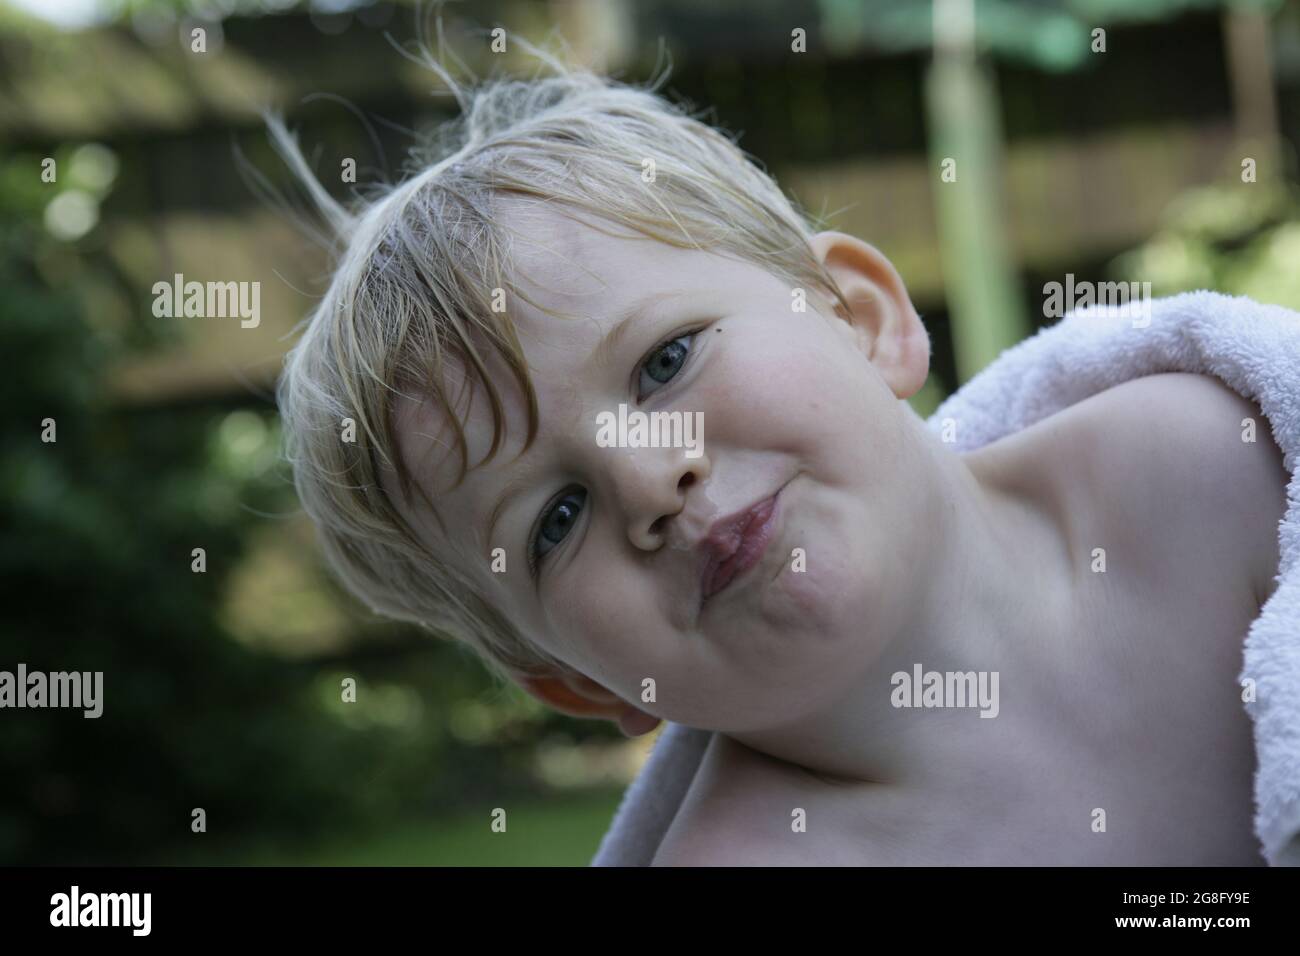 Outdoor Sommer Garten Porträt von jungen Kleinkind Kind mit blonden Haaren in Handtuch gewickelt Stockfoto